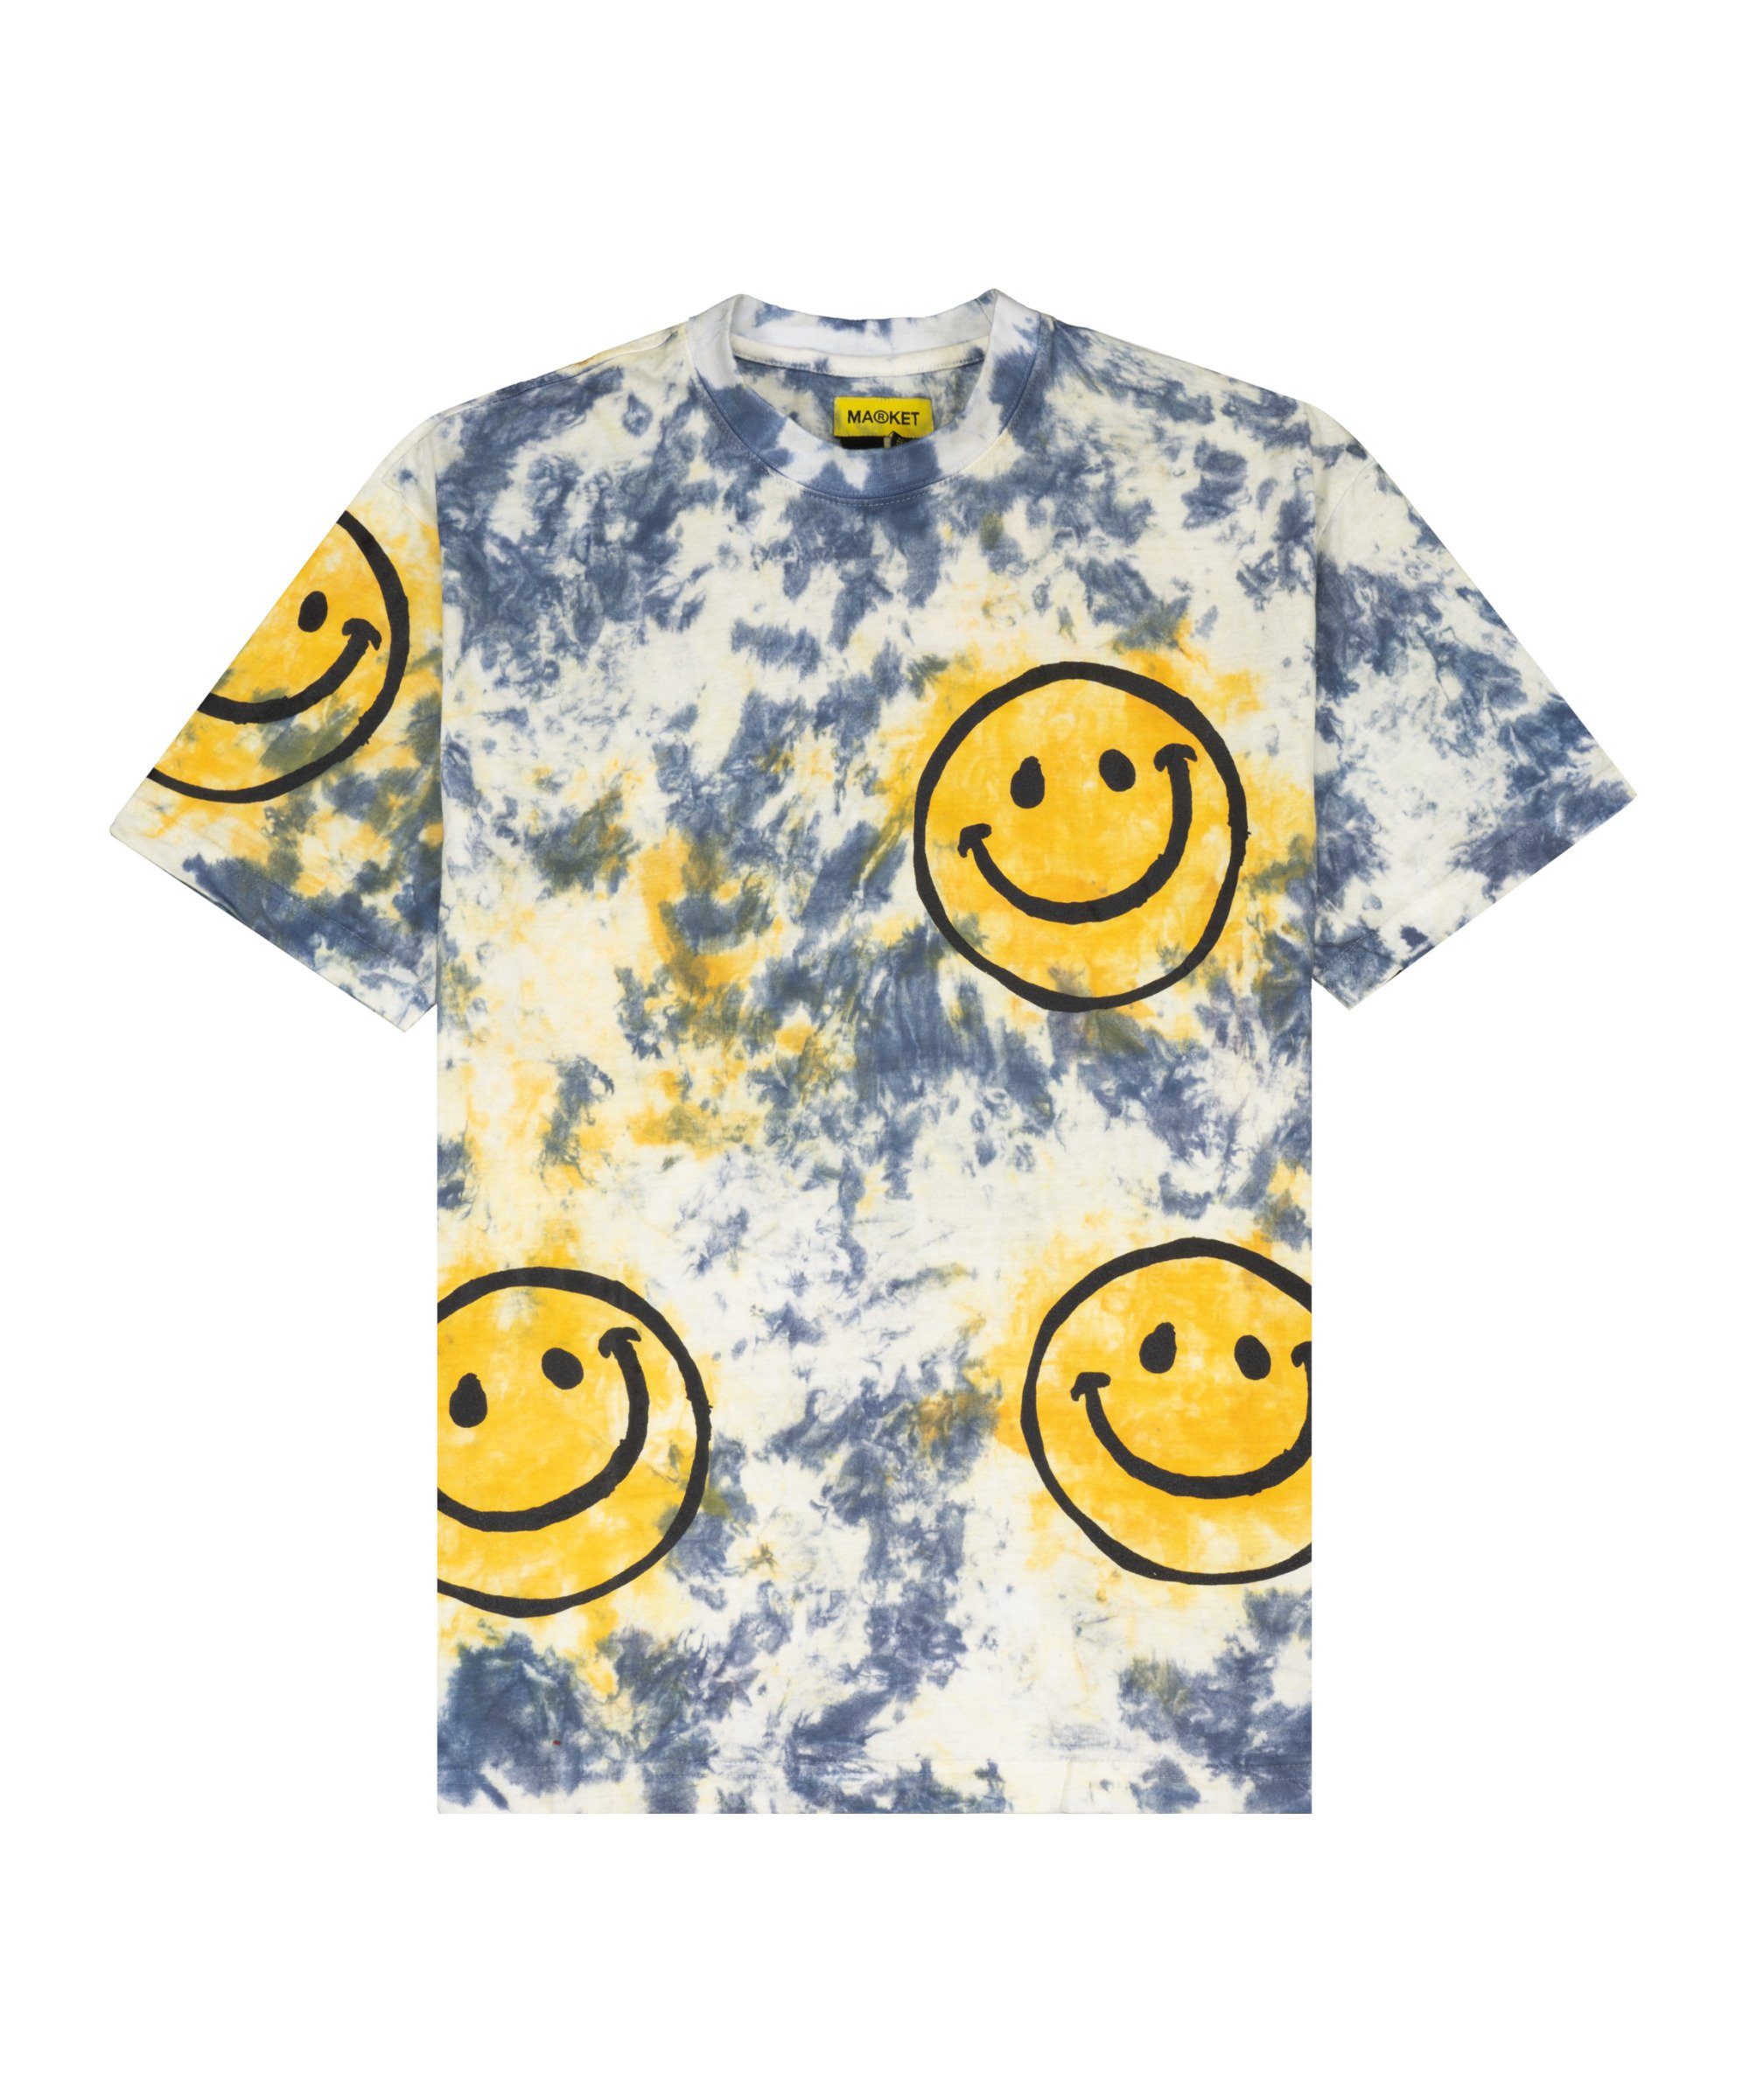 Market T-Shirt Smiley Sun Dye T-Shirt default